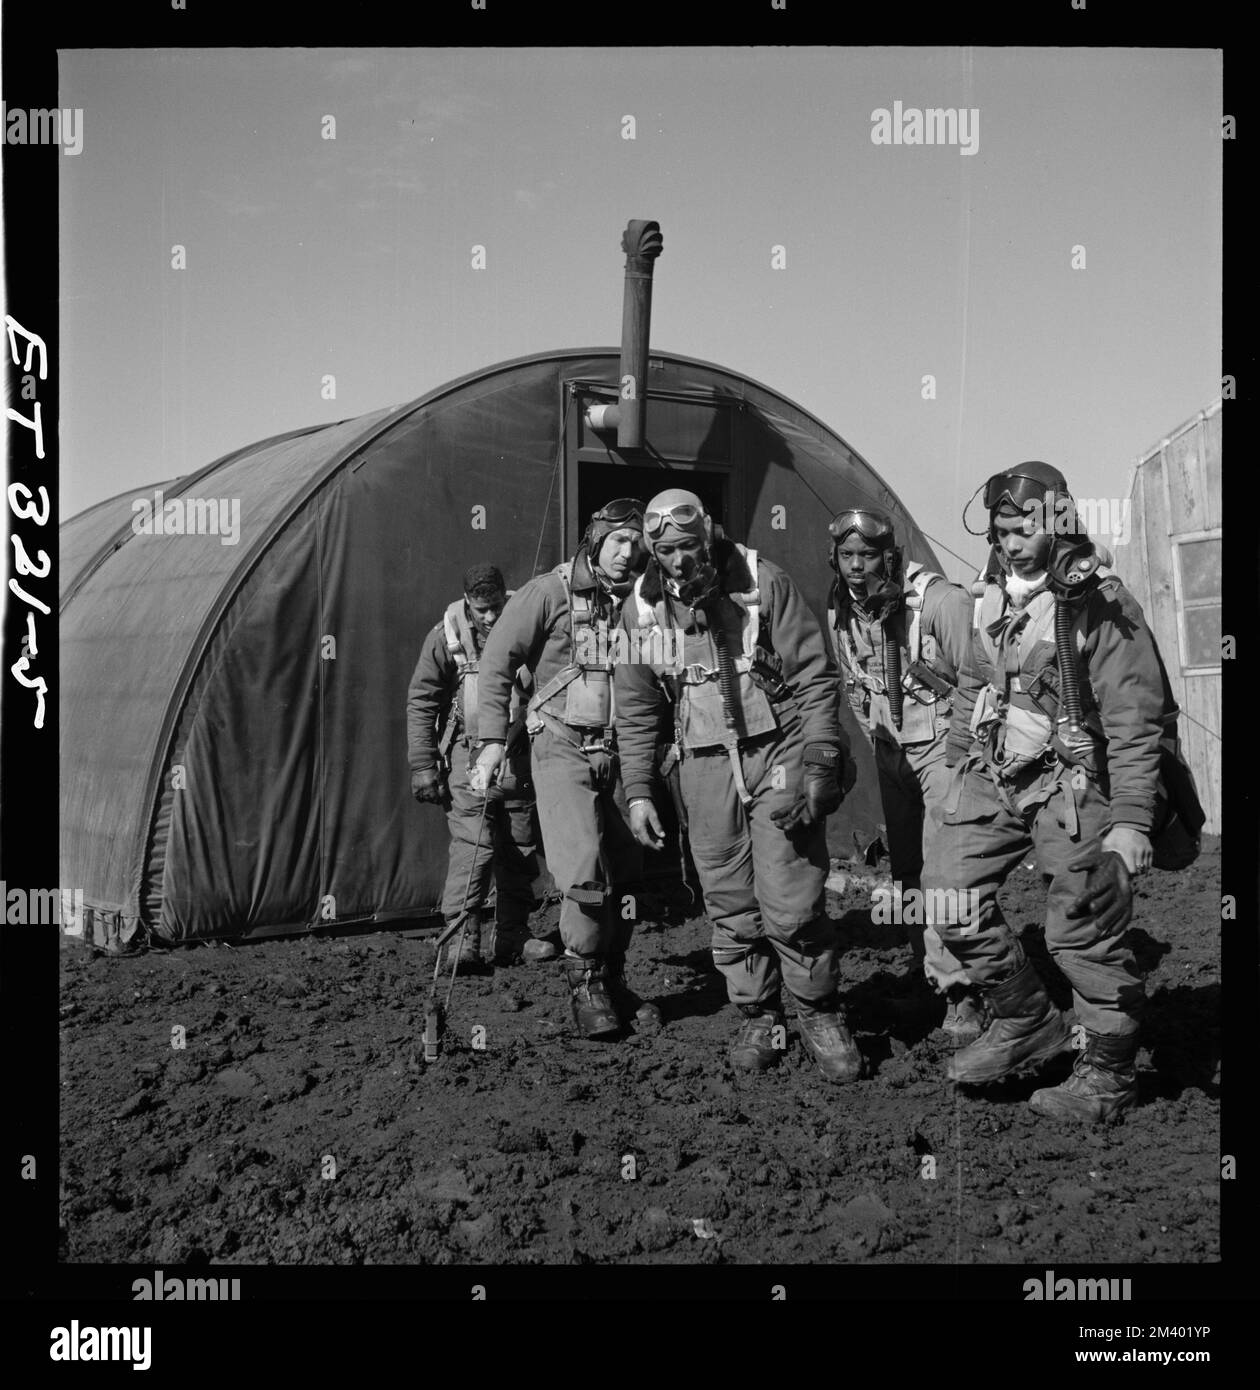 Des aviateurs Tuskegee quittant la salle de parachute, Ramitelli, Italie, 1945 mars, Toni Frissell, Antoinette Frissell Bacon, Antoinette Frissell Banque D'Images